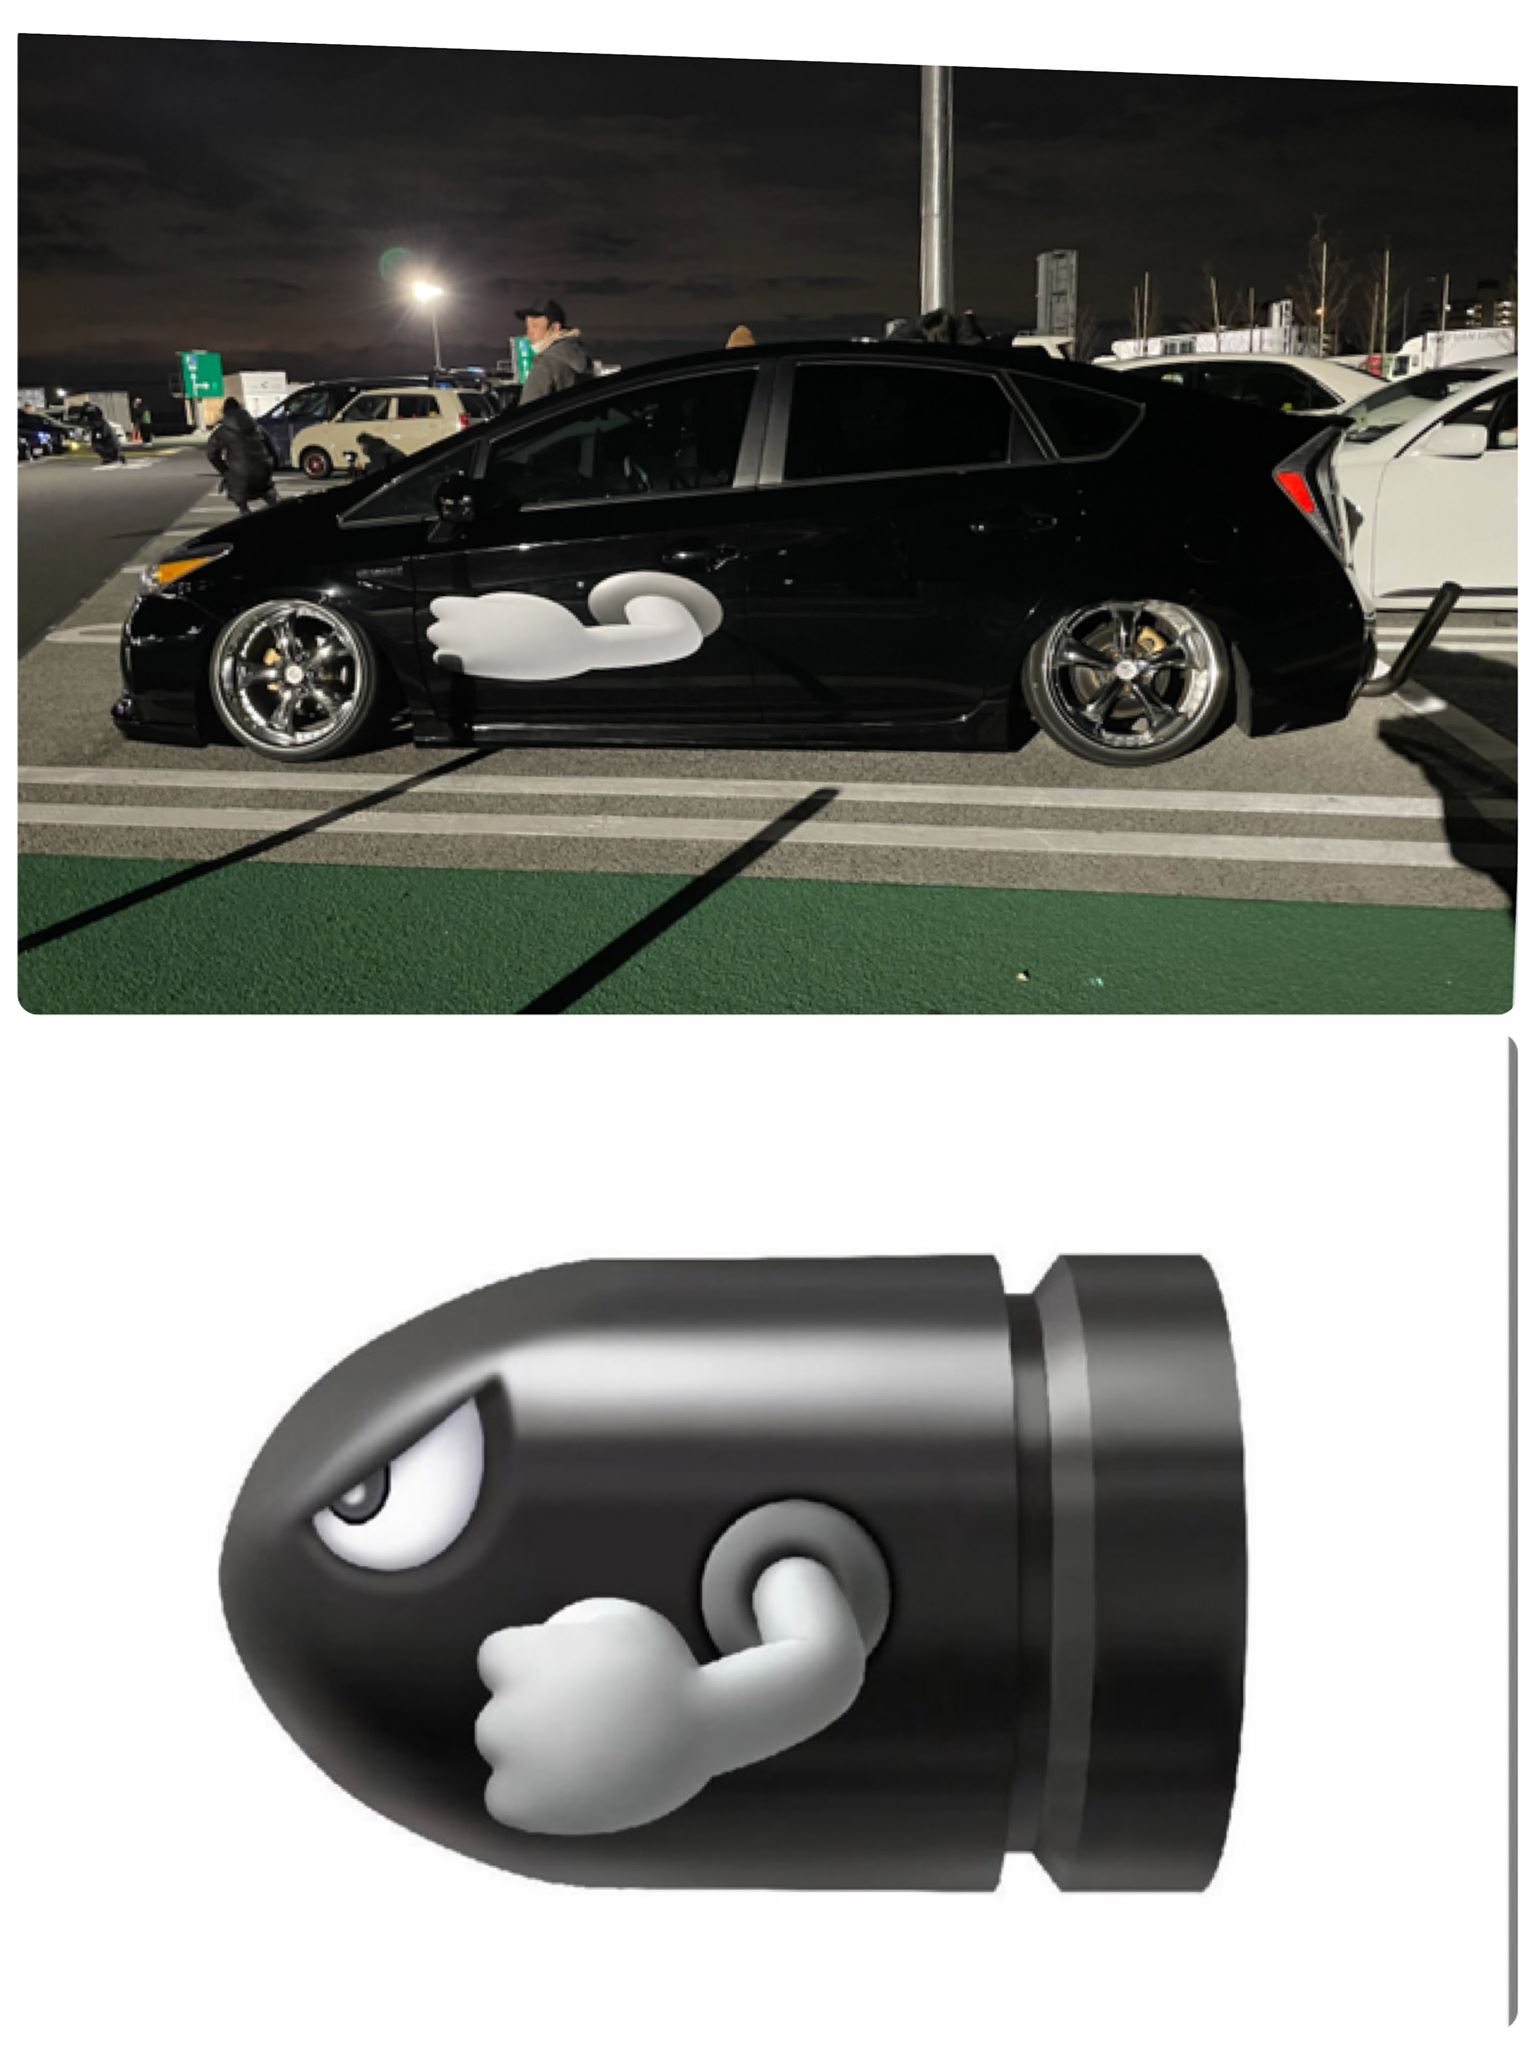 現實瑪利歐賽車？任粉改裝「Wii把手」變方向盤　連車身外都完美致敬！